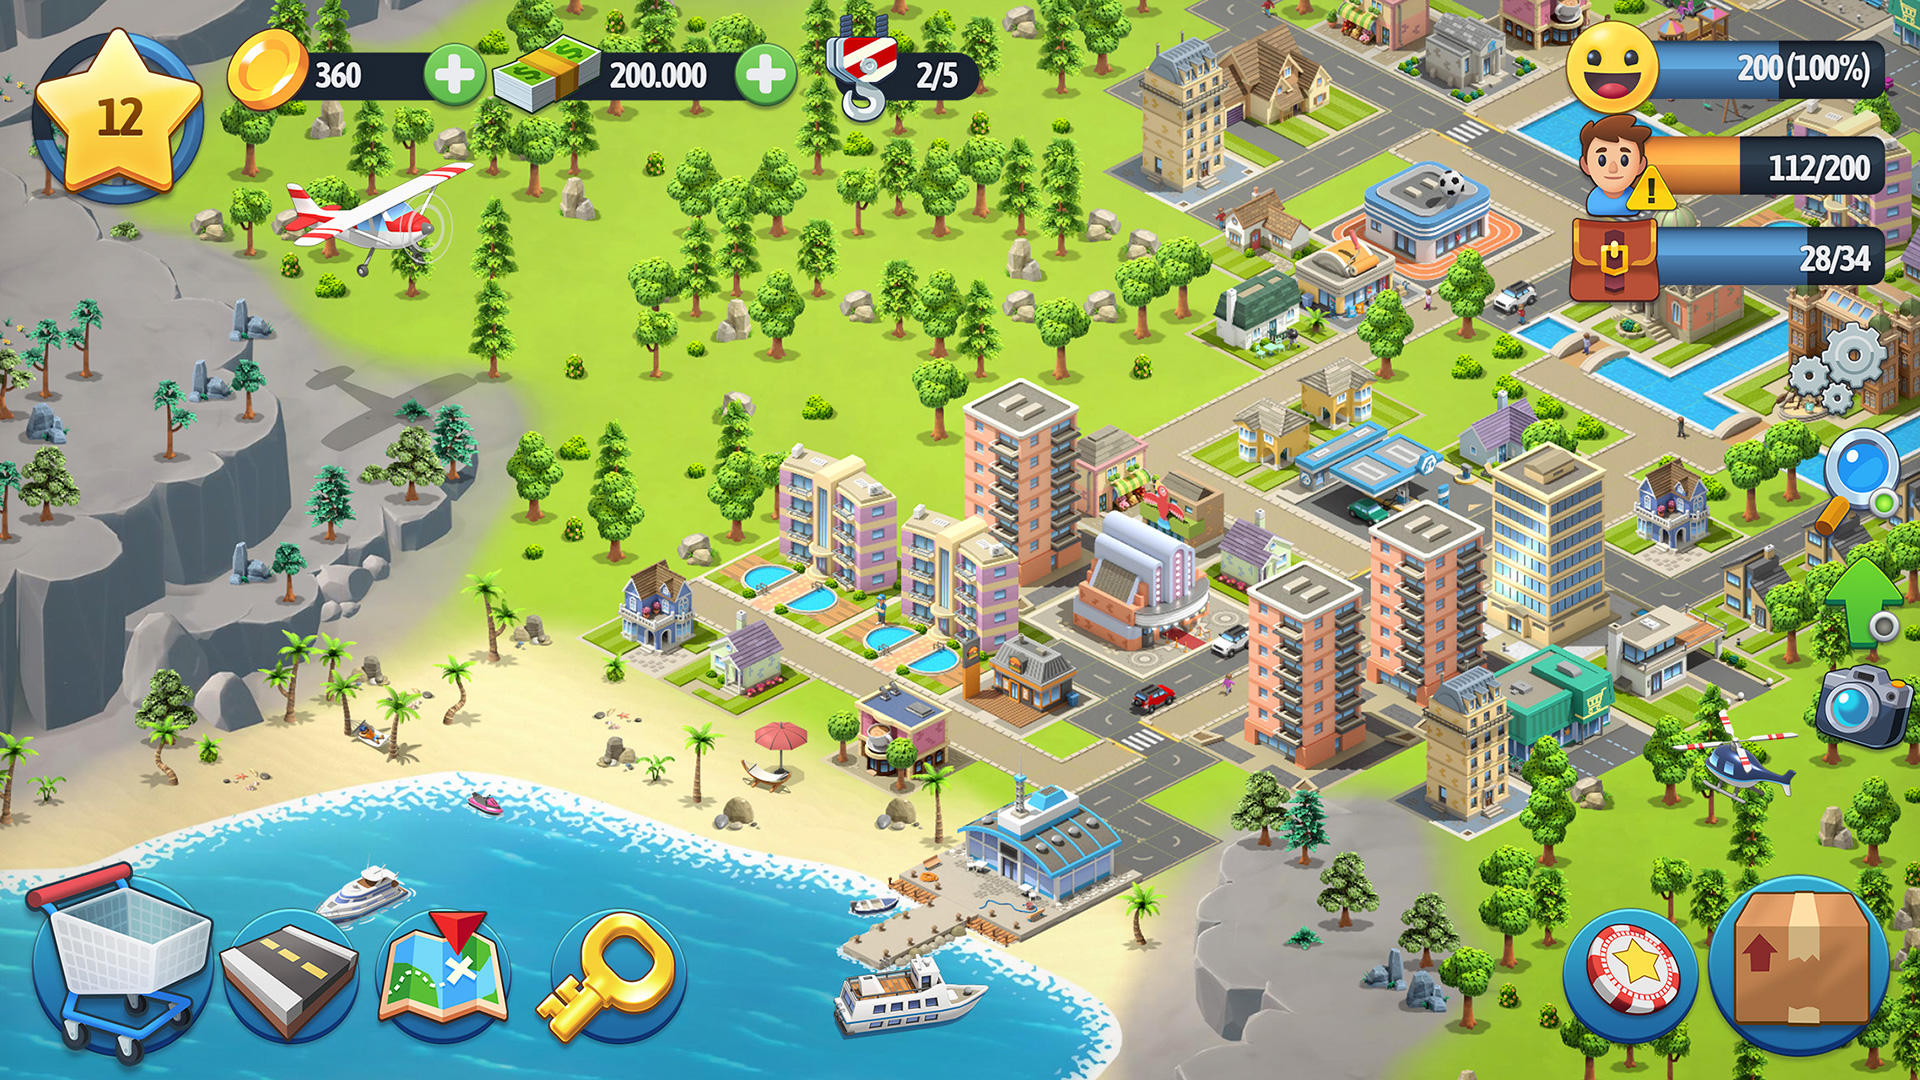 城市島6：建築生活遊戲截圖